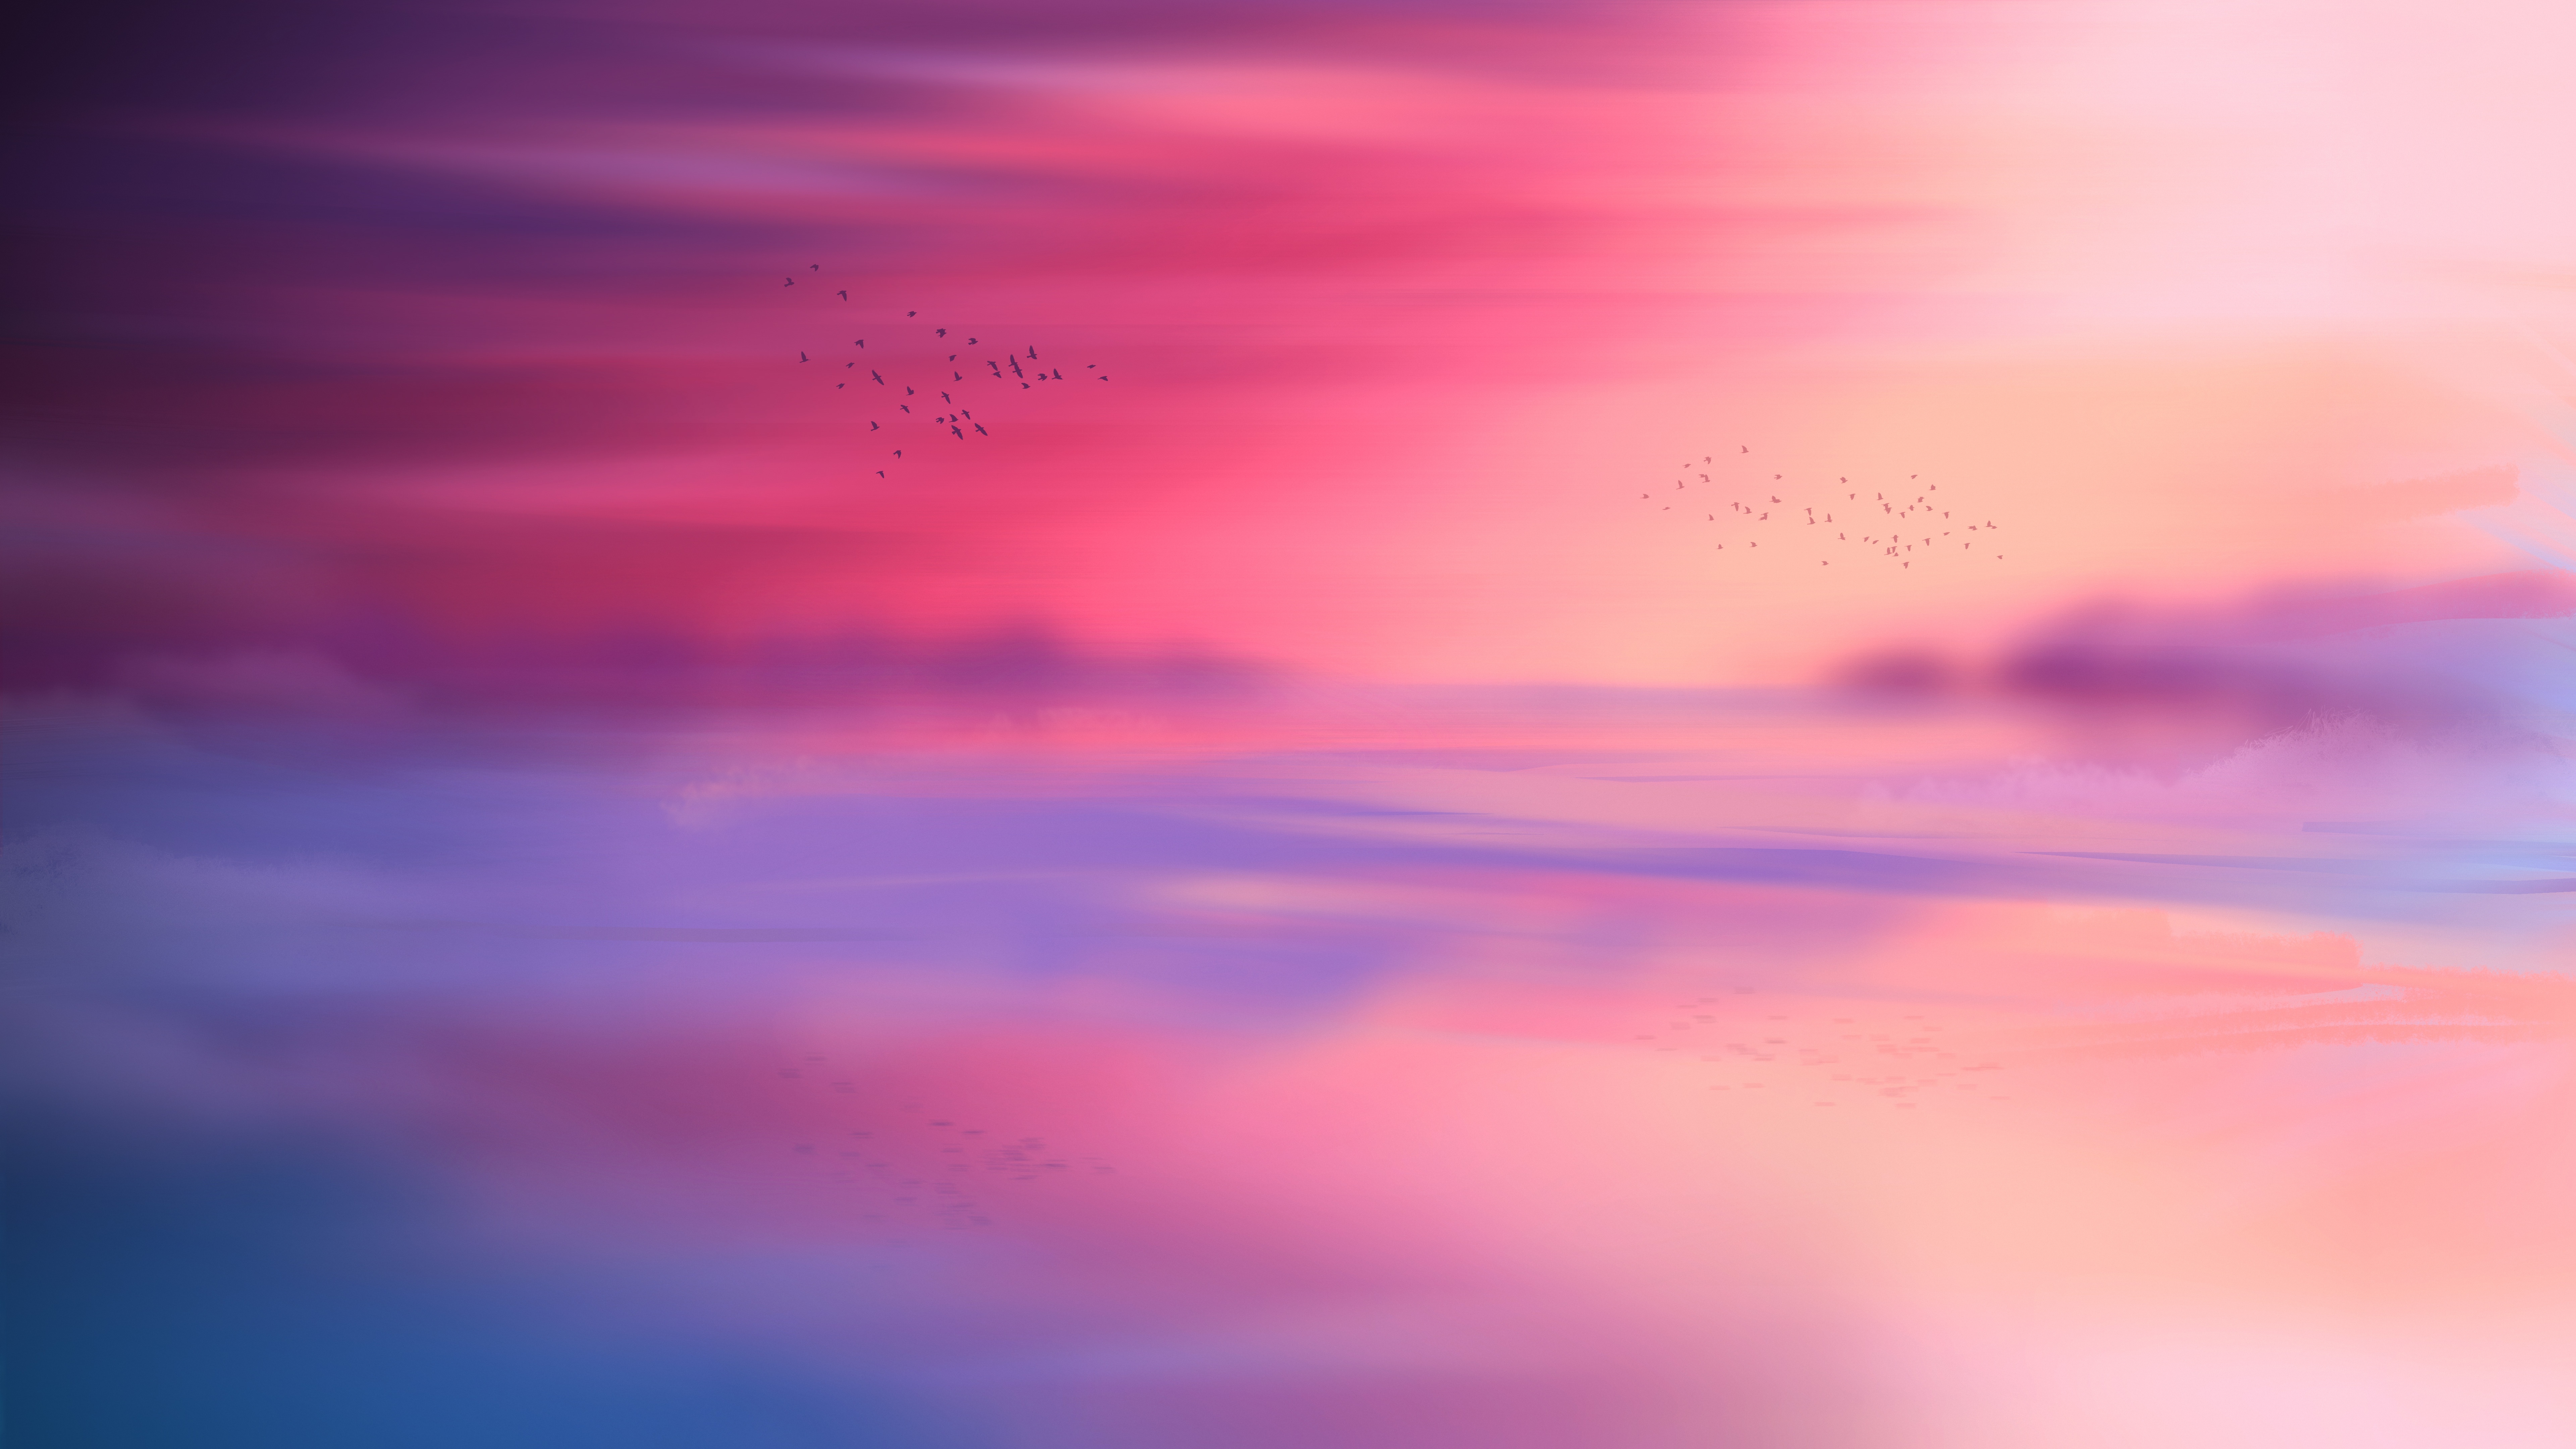 HD wallpaper, 5K, Sunset, Seascape, 8K, Flying Birds, Horizon, Aesthetic, Pink Sky, Scenic